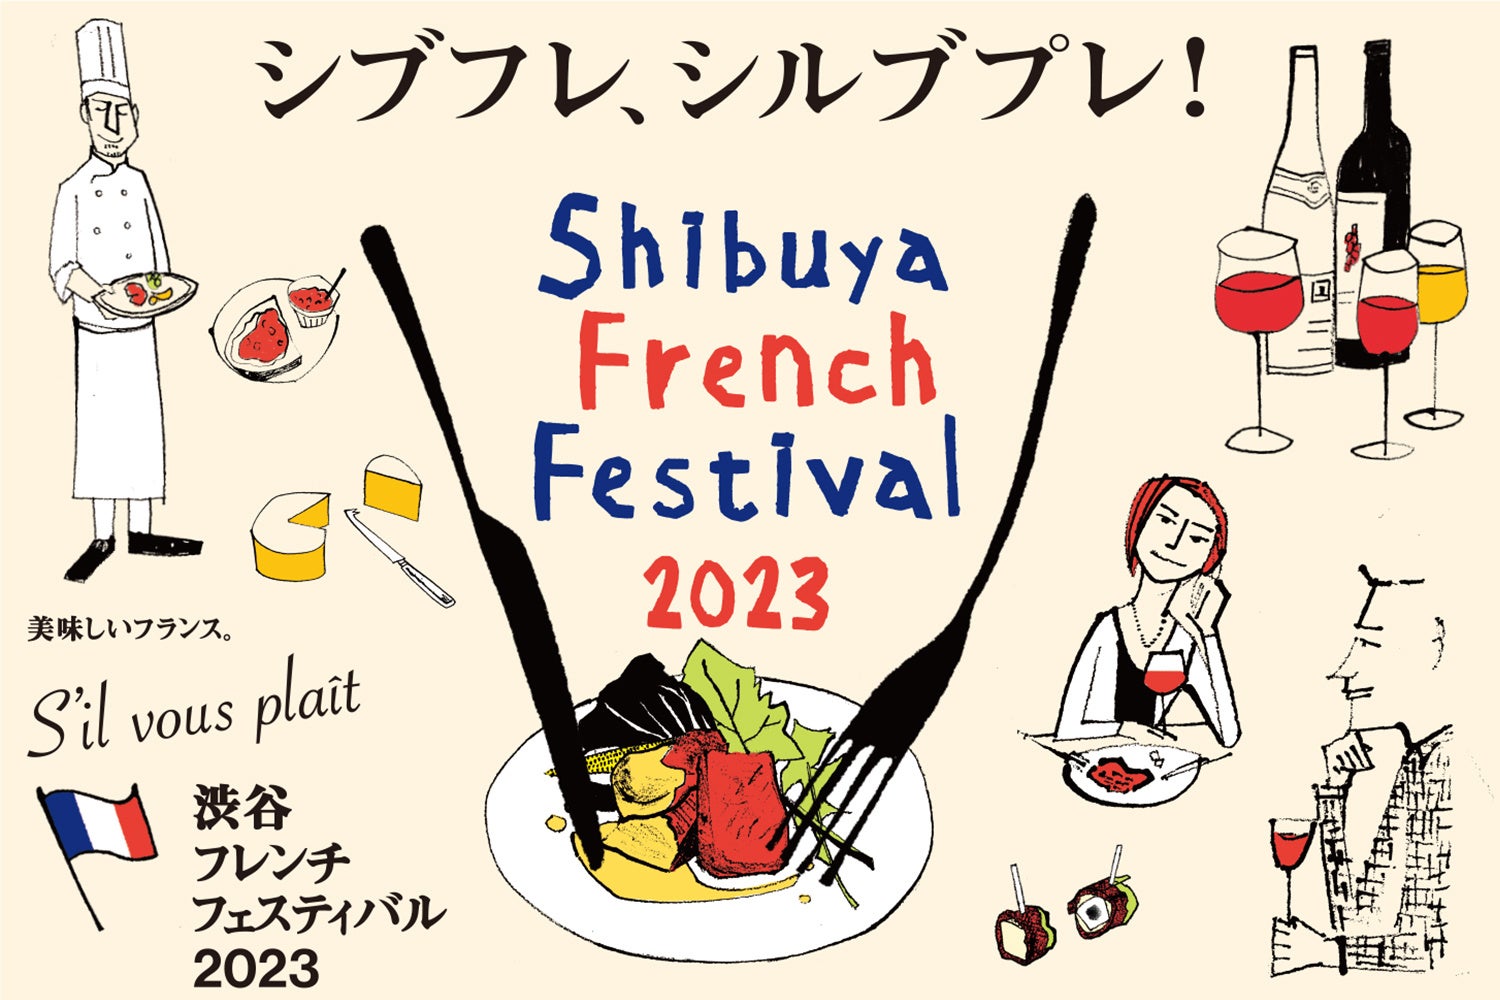 シブフレ・シルブプレ！渋谷フレンチフェスティバル2023のサブ画像1